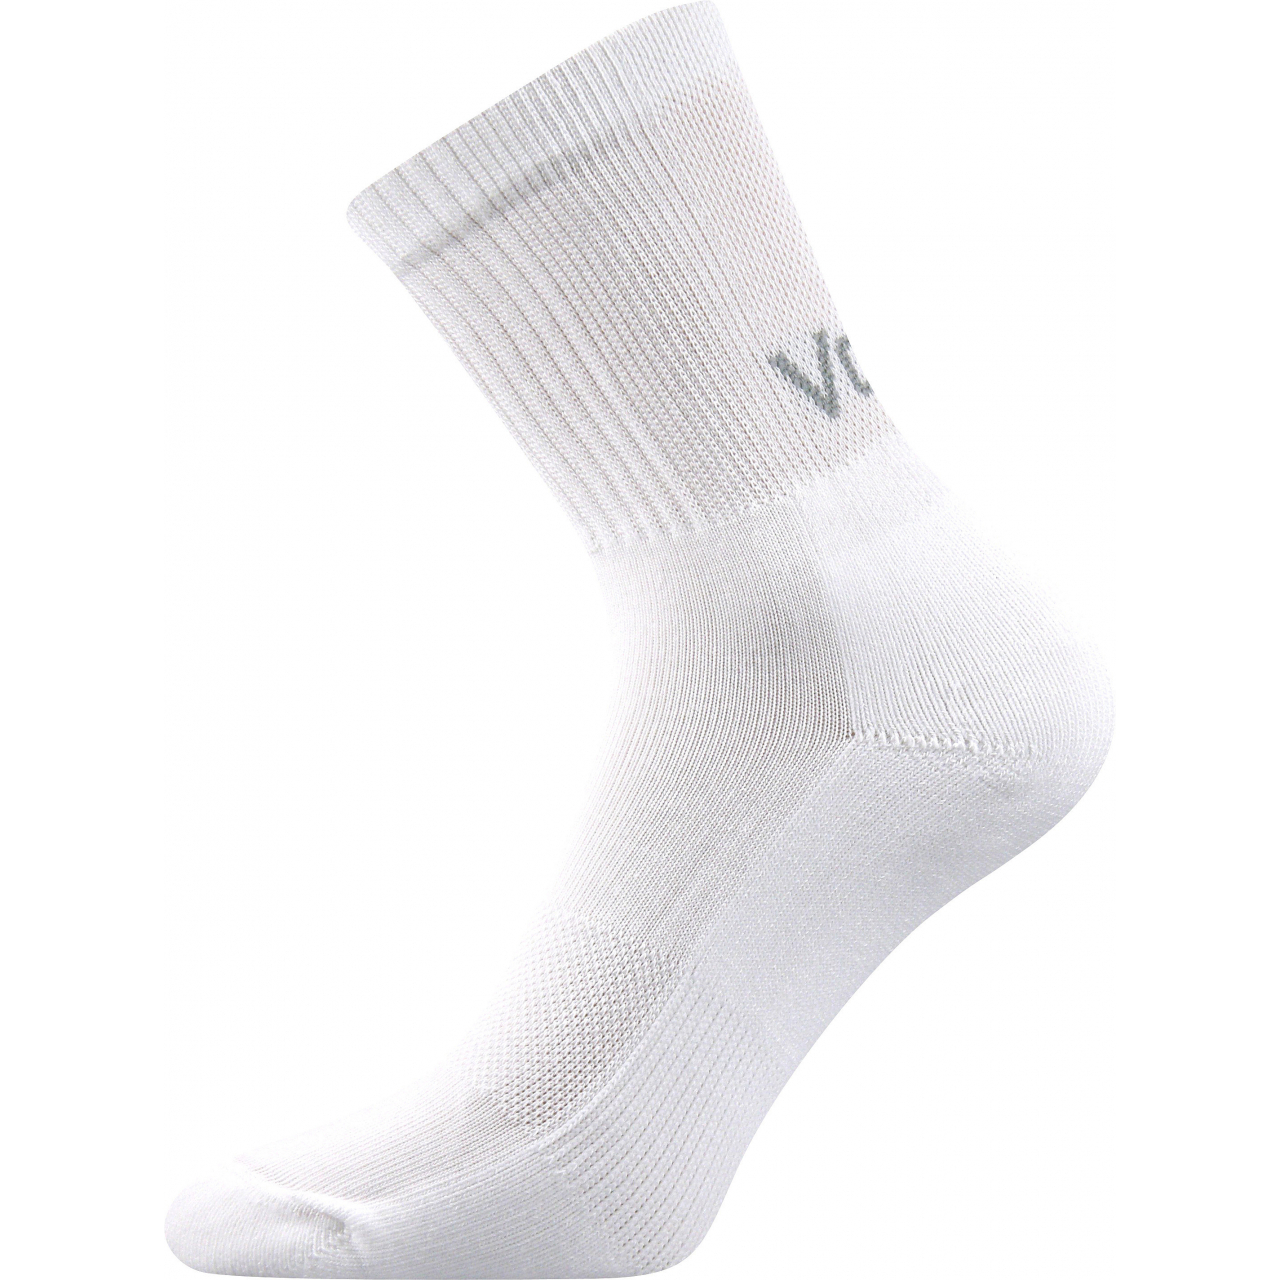 Ponožky sportovní unisex Voxx Mystic - bílé, 47-50